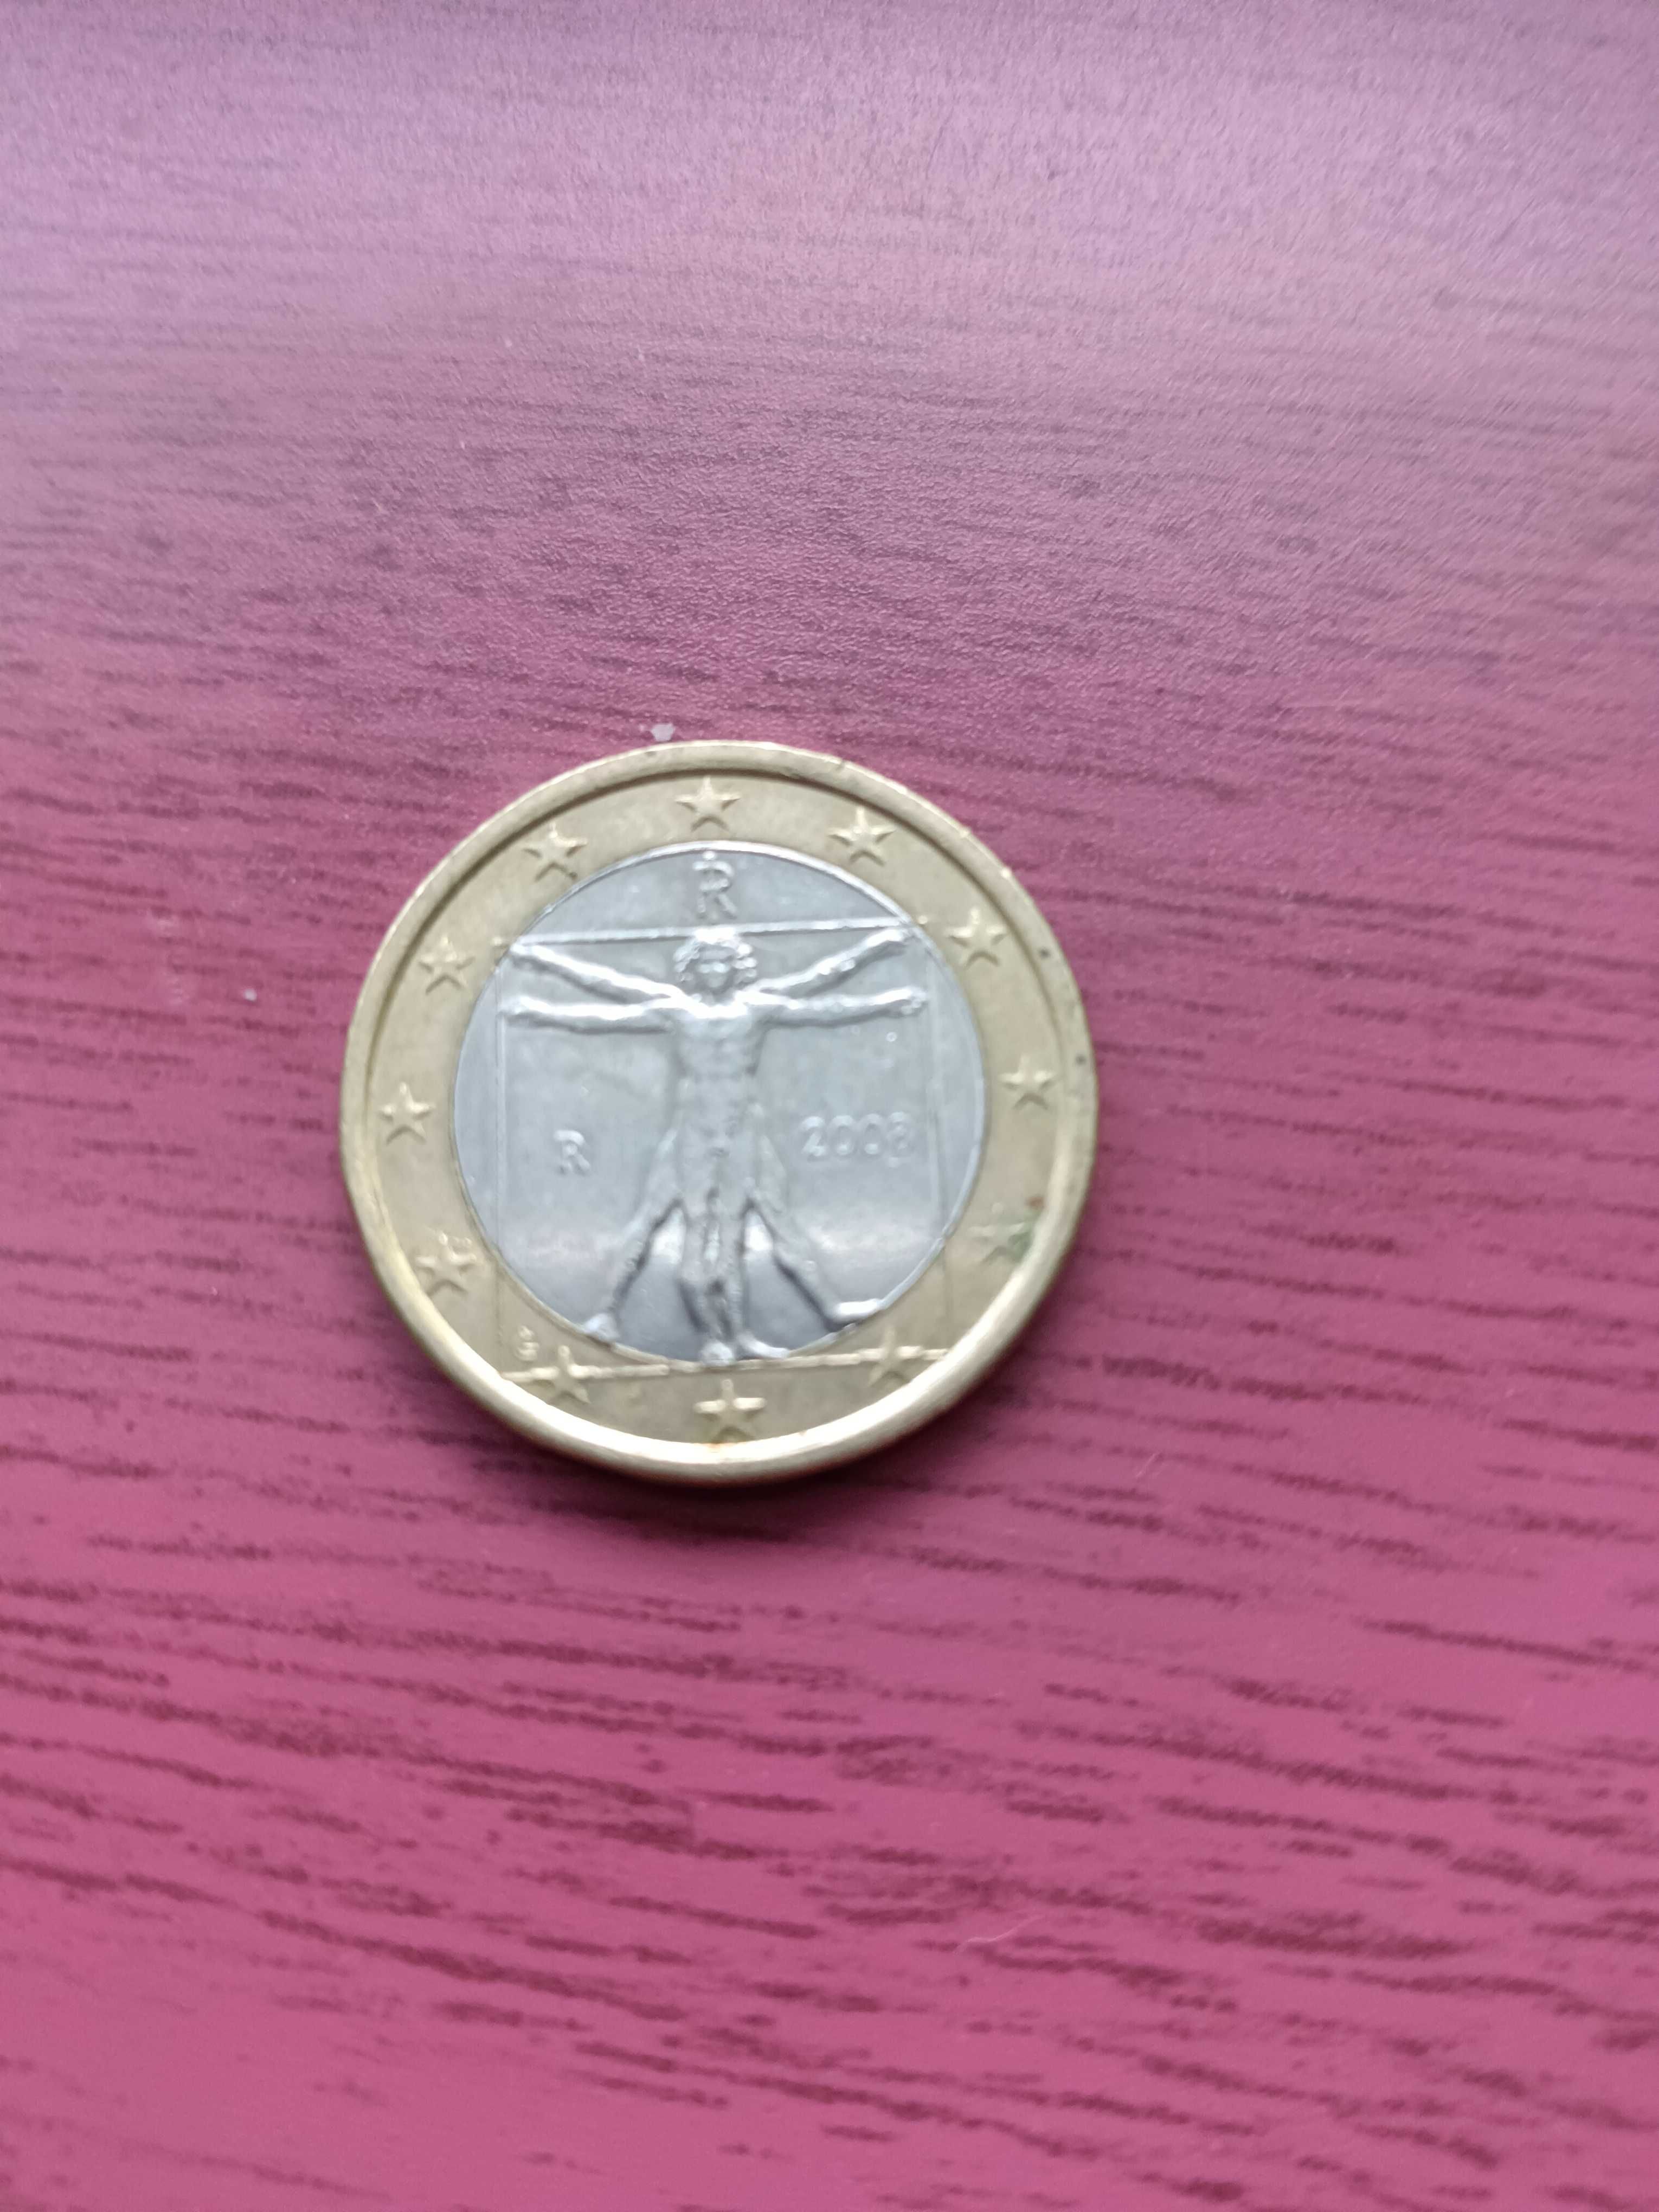 Monede 1 euro vechi